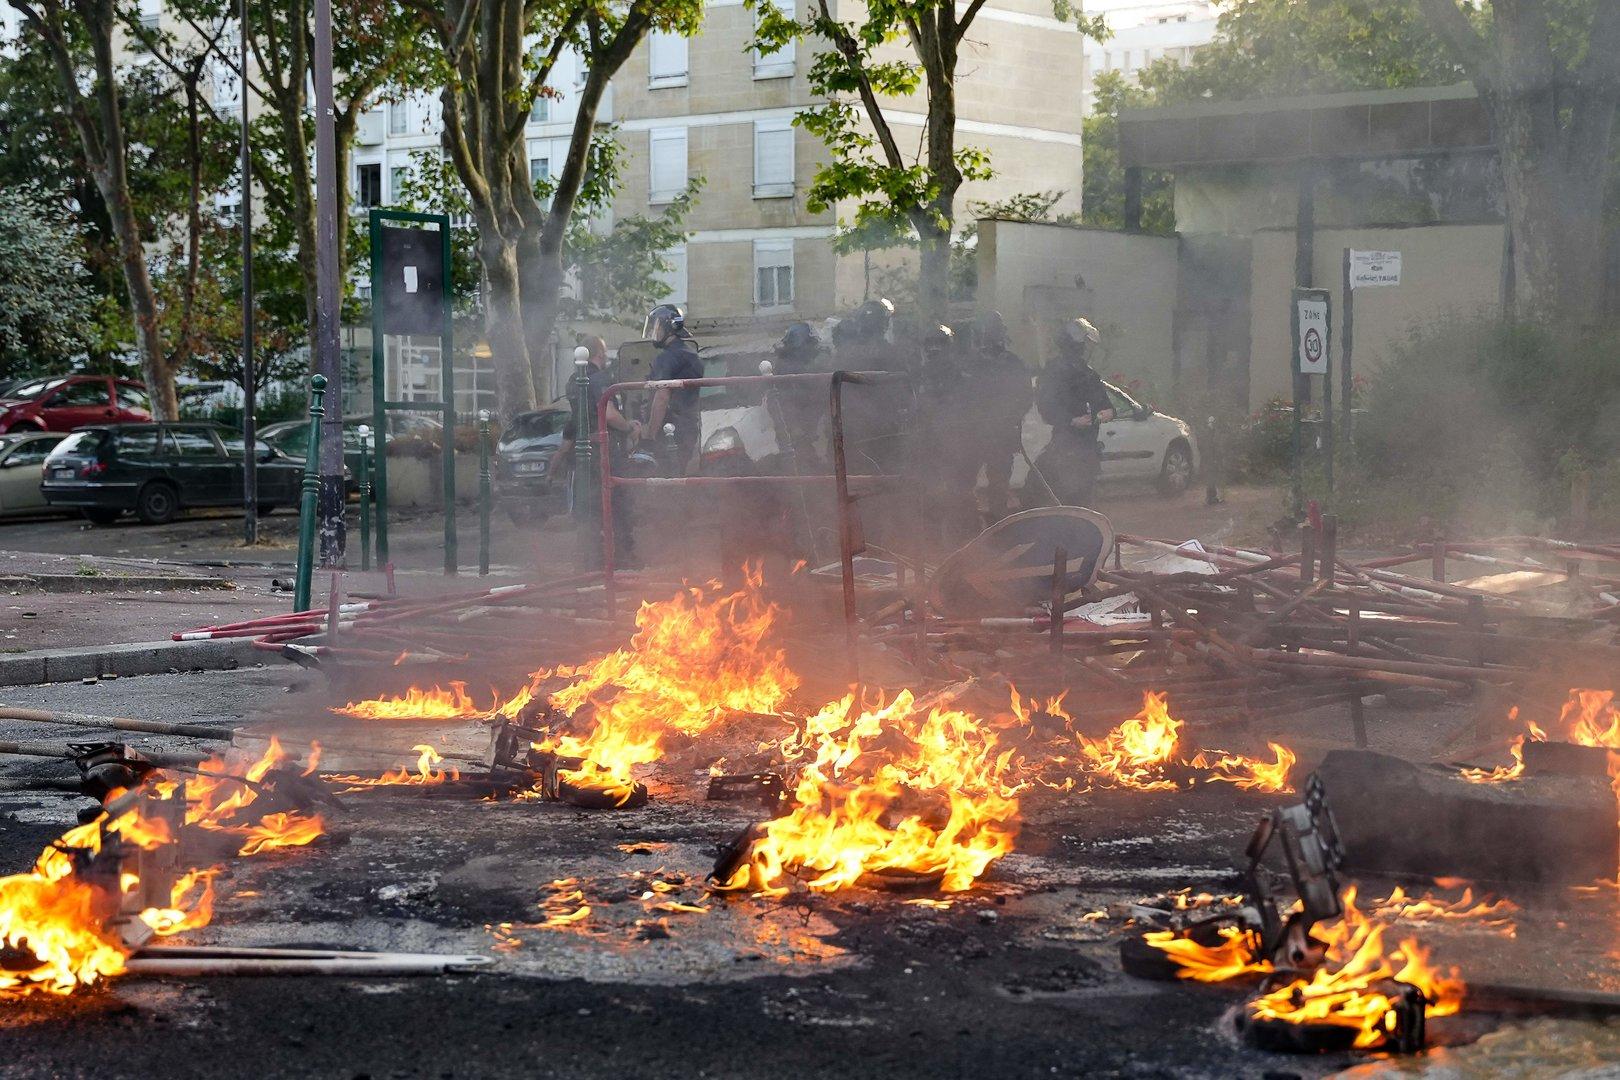 Mülltonnen, Autos, eine Volksschule ins Brand gesetzt: Chaos bei Paris